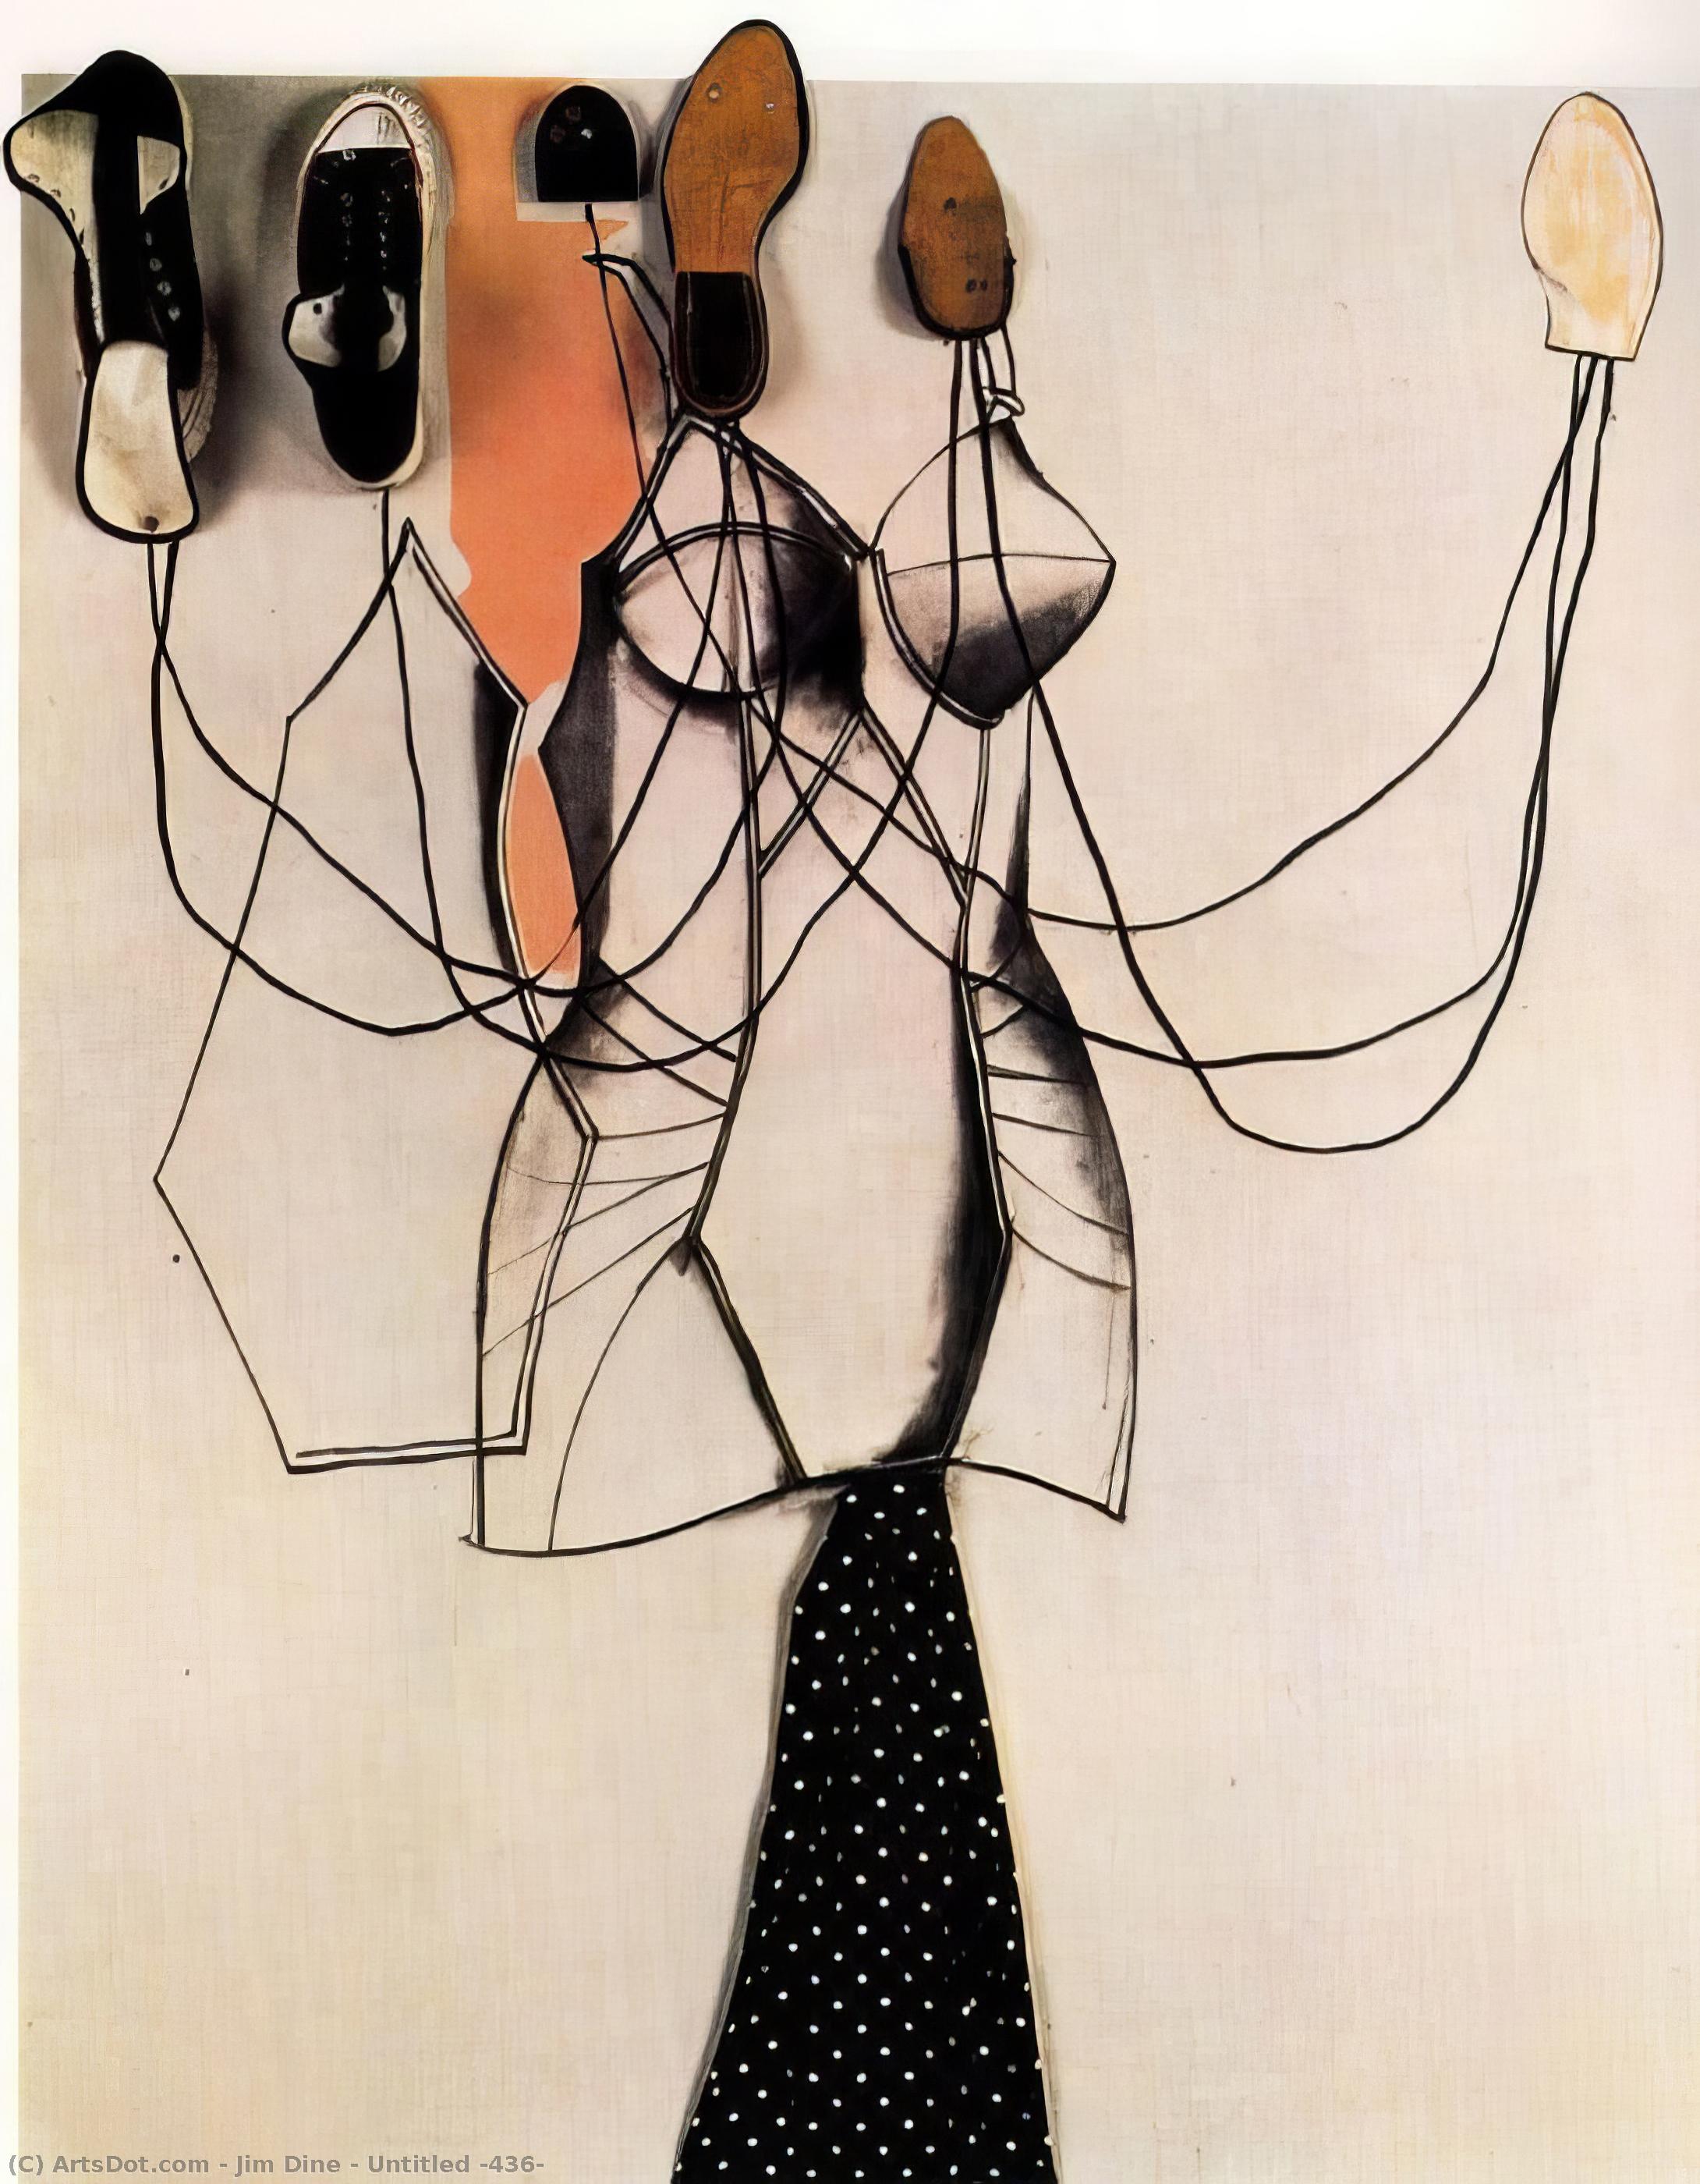 Wikioo.org - Bách khoa toàn thư về mỹ thuật - Vẽ tranh, Tác phẩm nghệ thuật Jim Dine - Untitled (436)